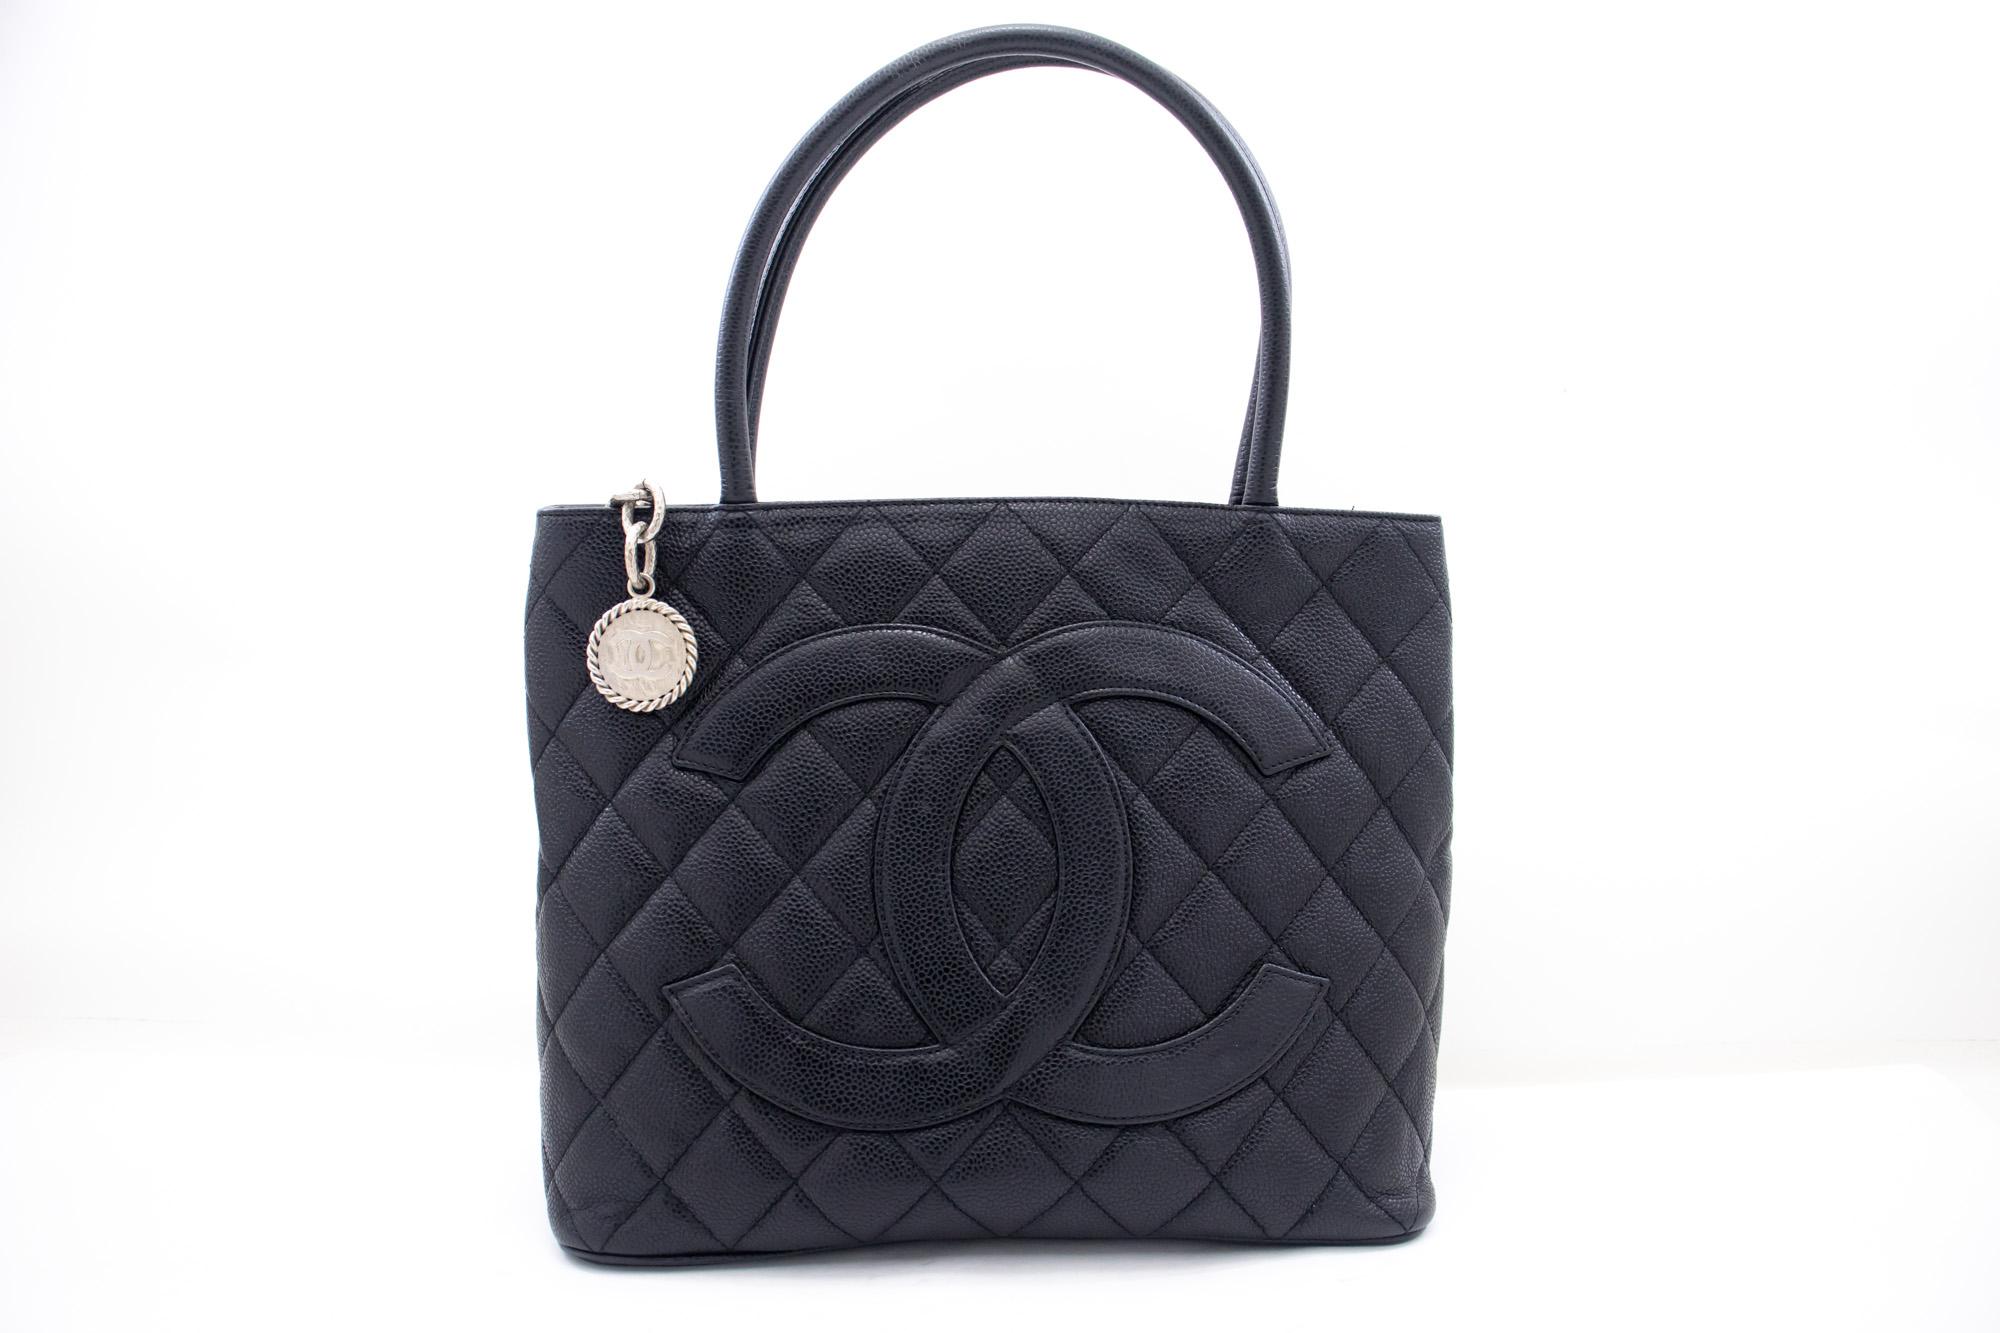 Un authentique Chanel Silver Medallion Caviar Shoulder Bag Shopping Tote Black. La couleur est noire. Le matériau extérieur est le cuir. Le motif est solide. Cet article est un Vintage / Classique. L'année de fabrication serait 2000-2 0 0 2